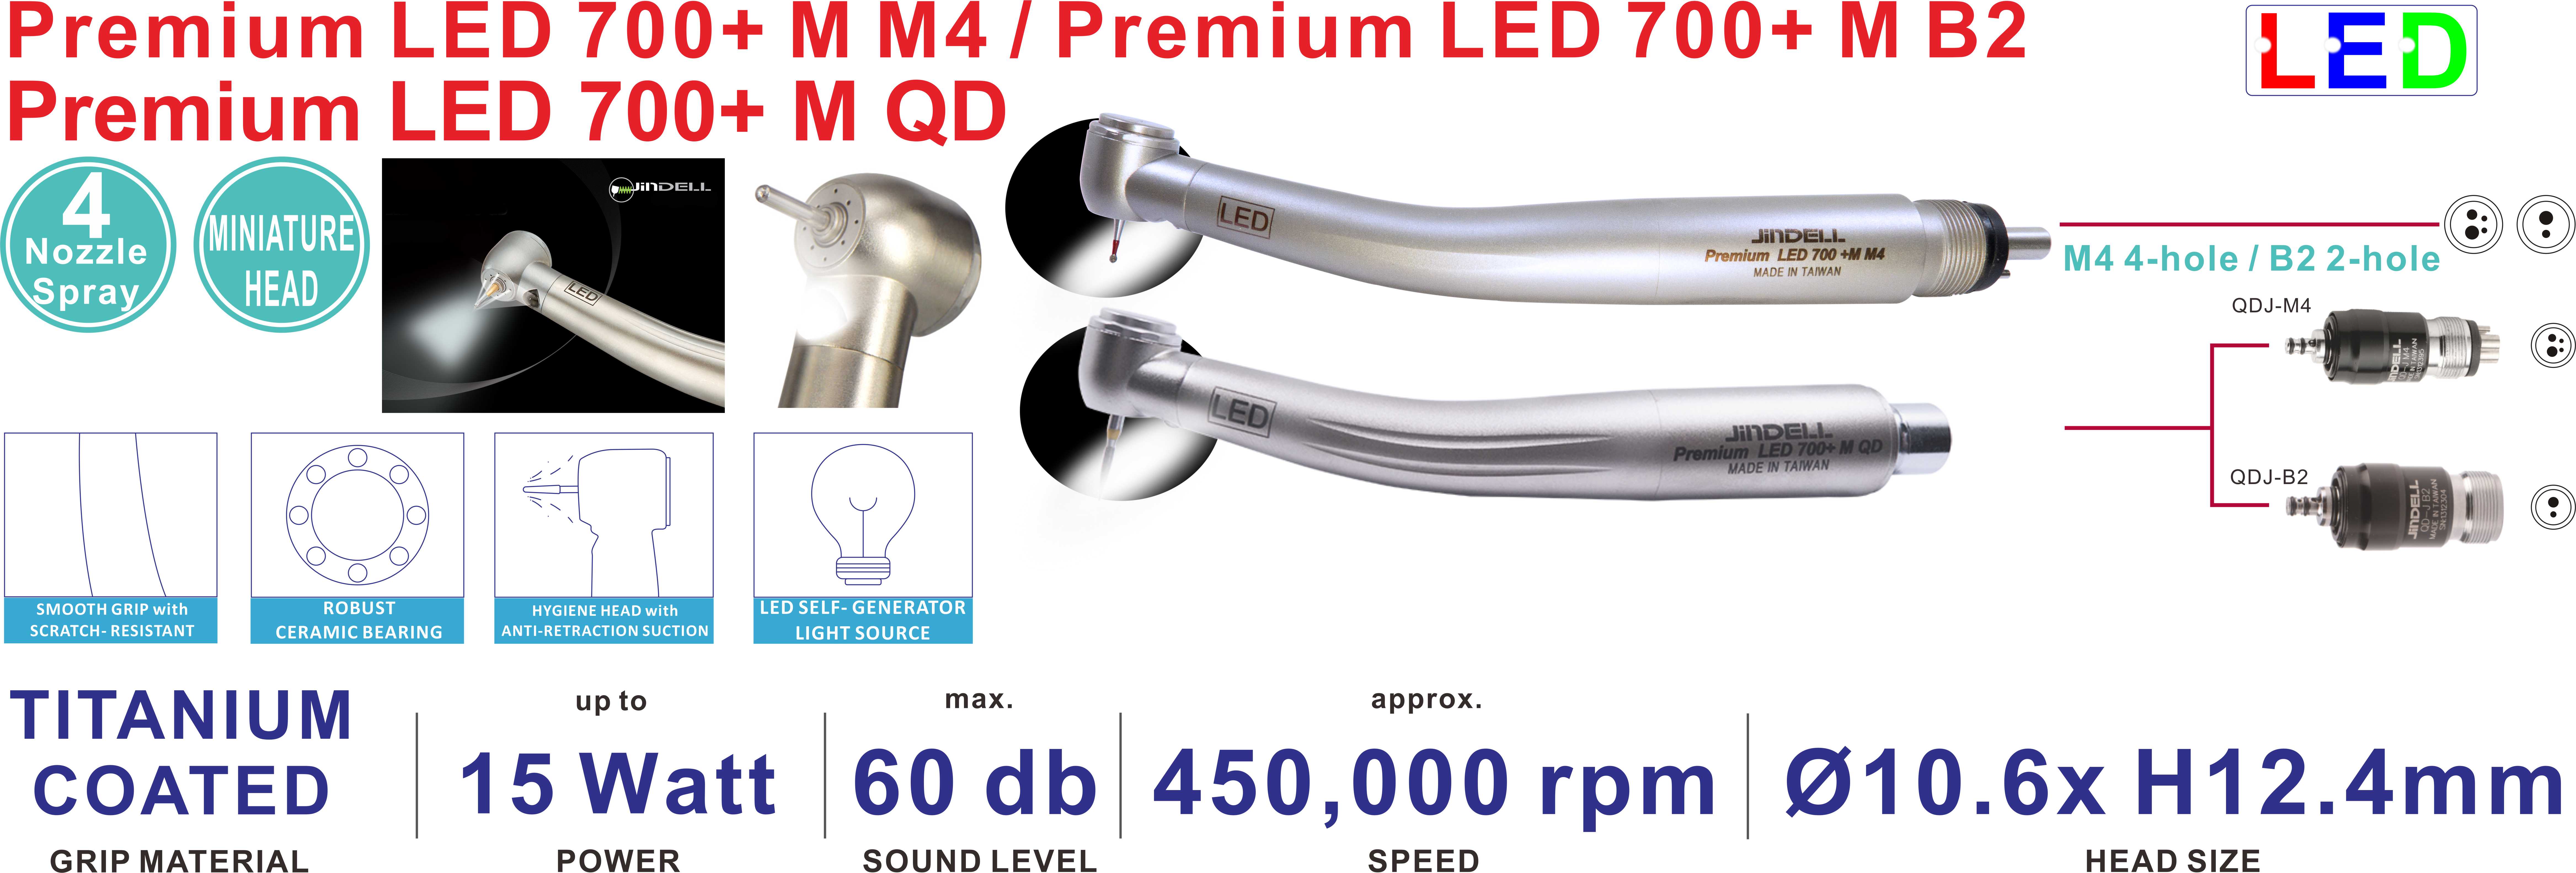 Premium LED 700+ M series Turbine Handpiece